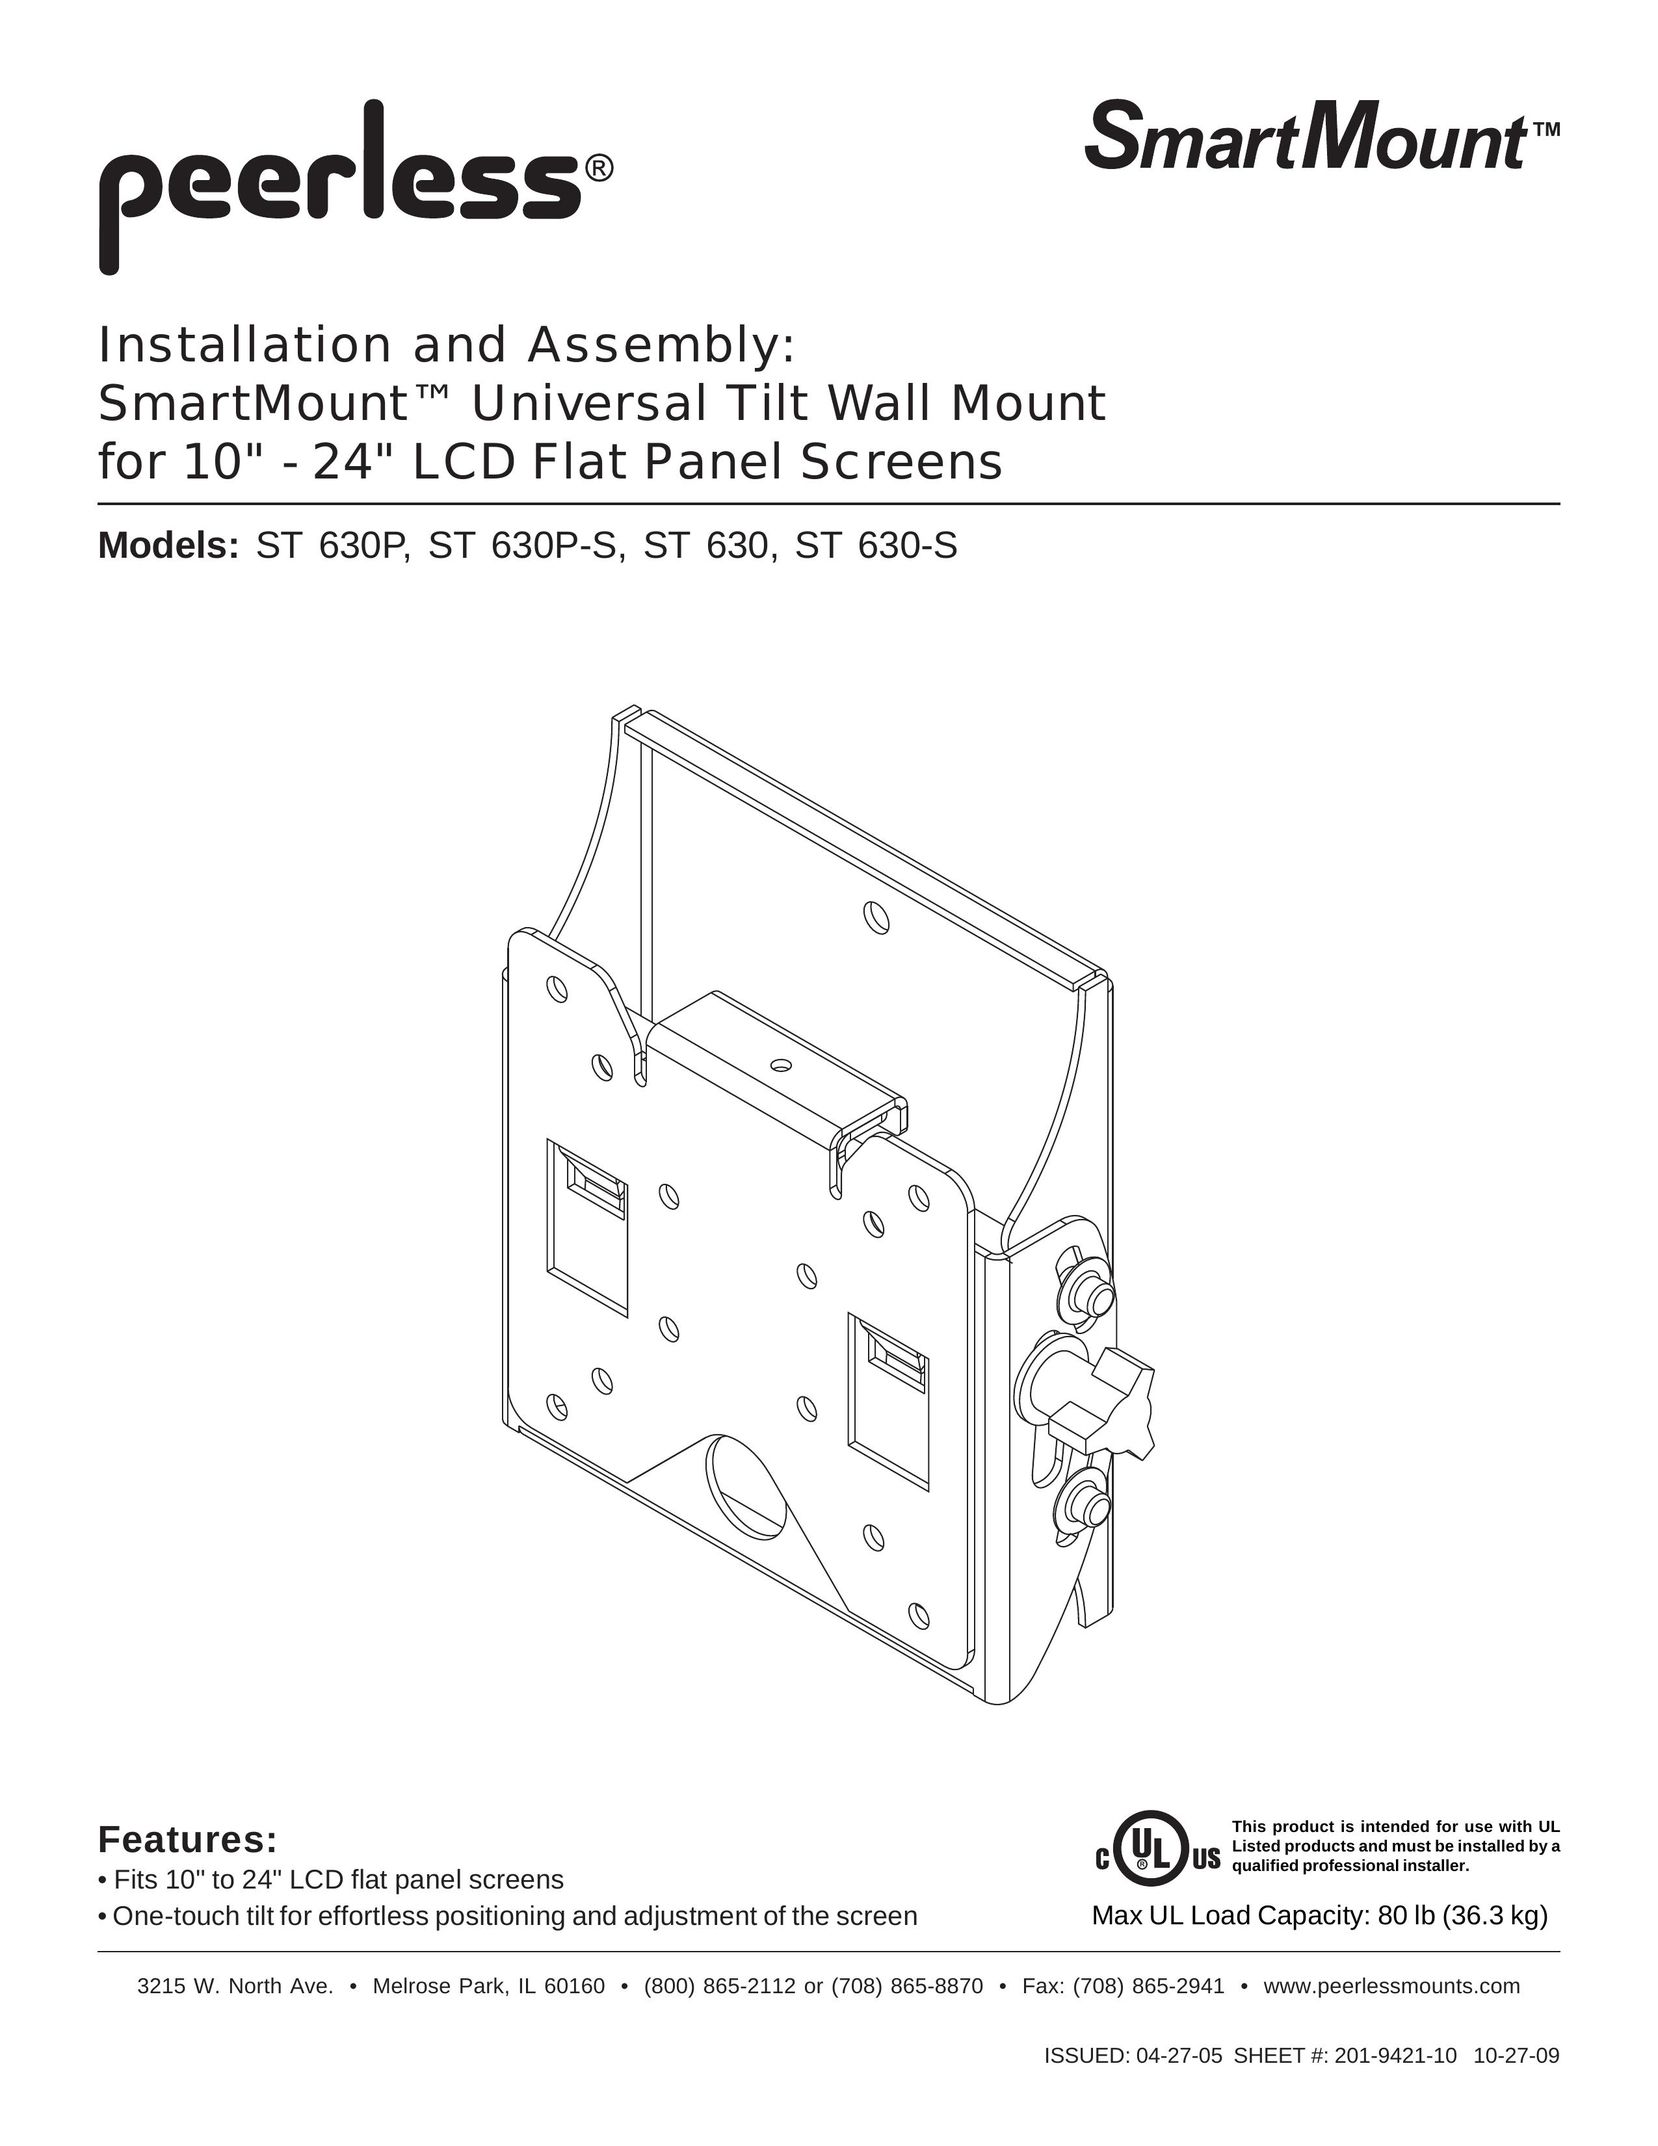 Peerless Industries ST630 Indoor Furnishings User Manual